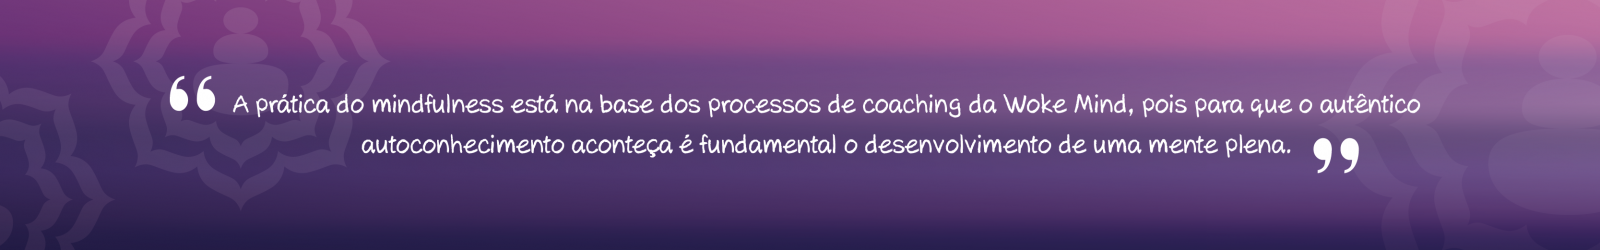 Artigo: O que é Coaching?